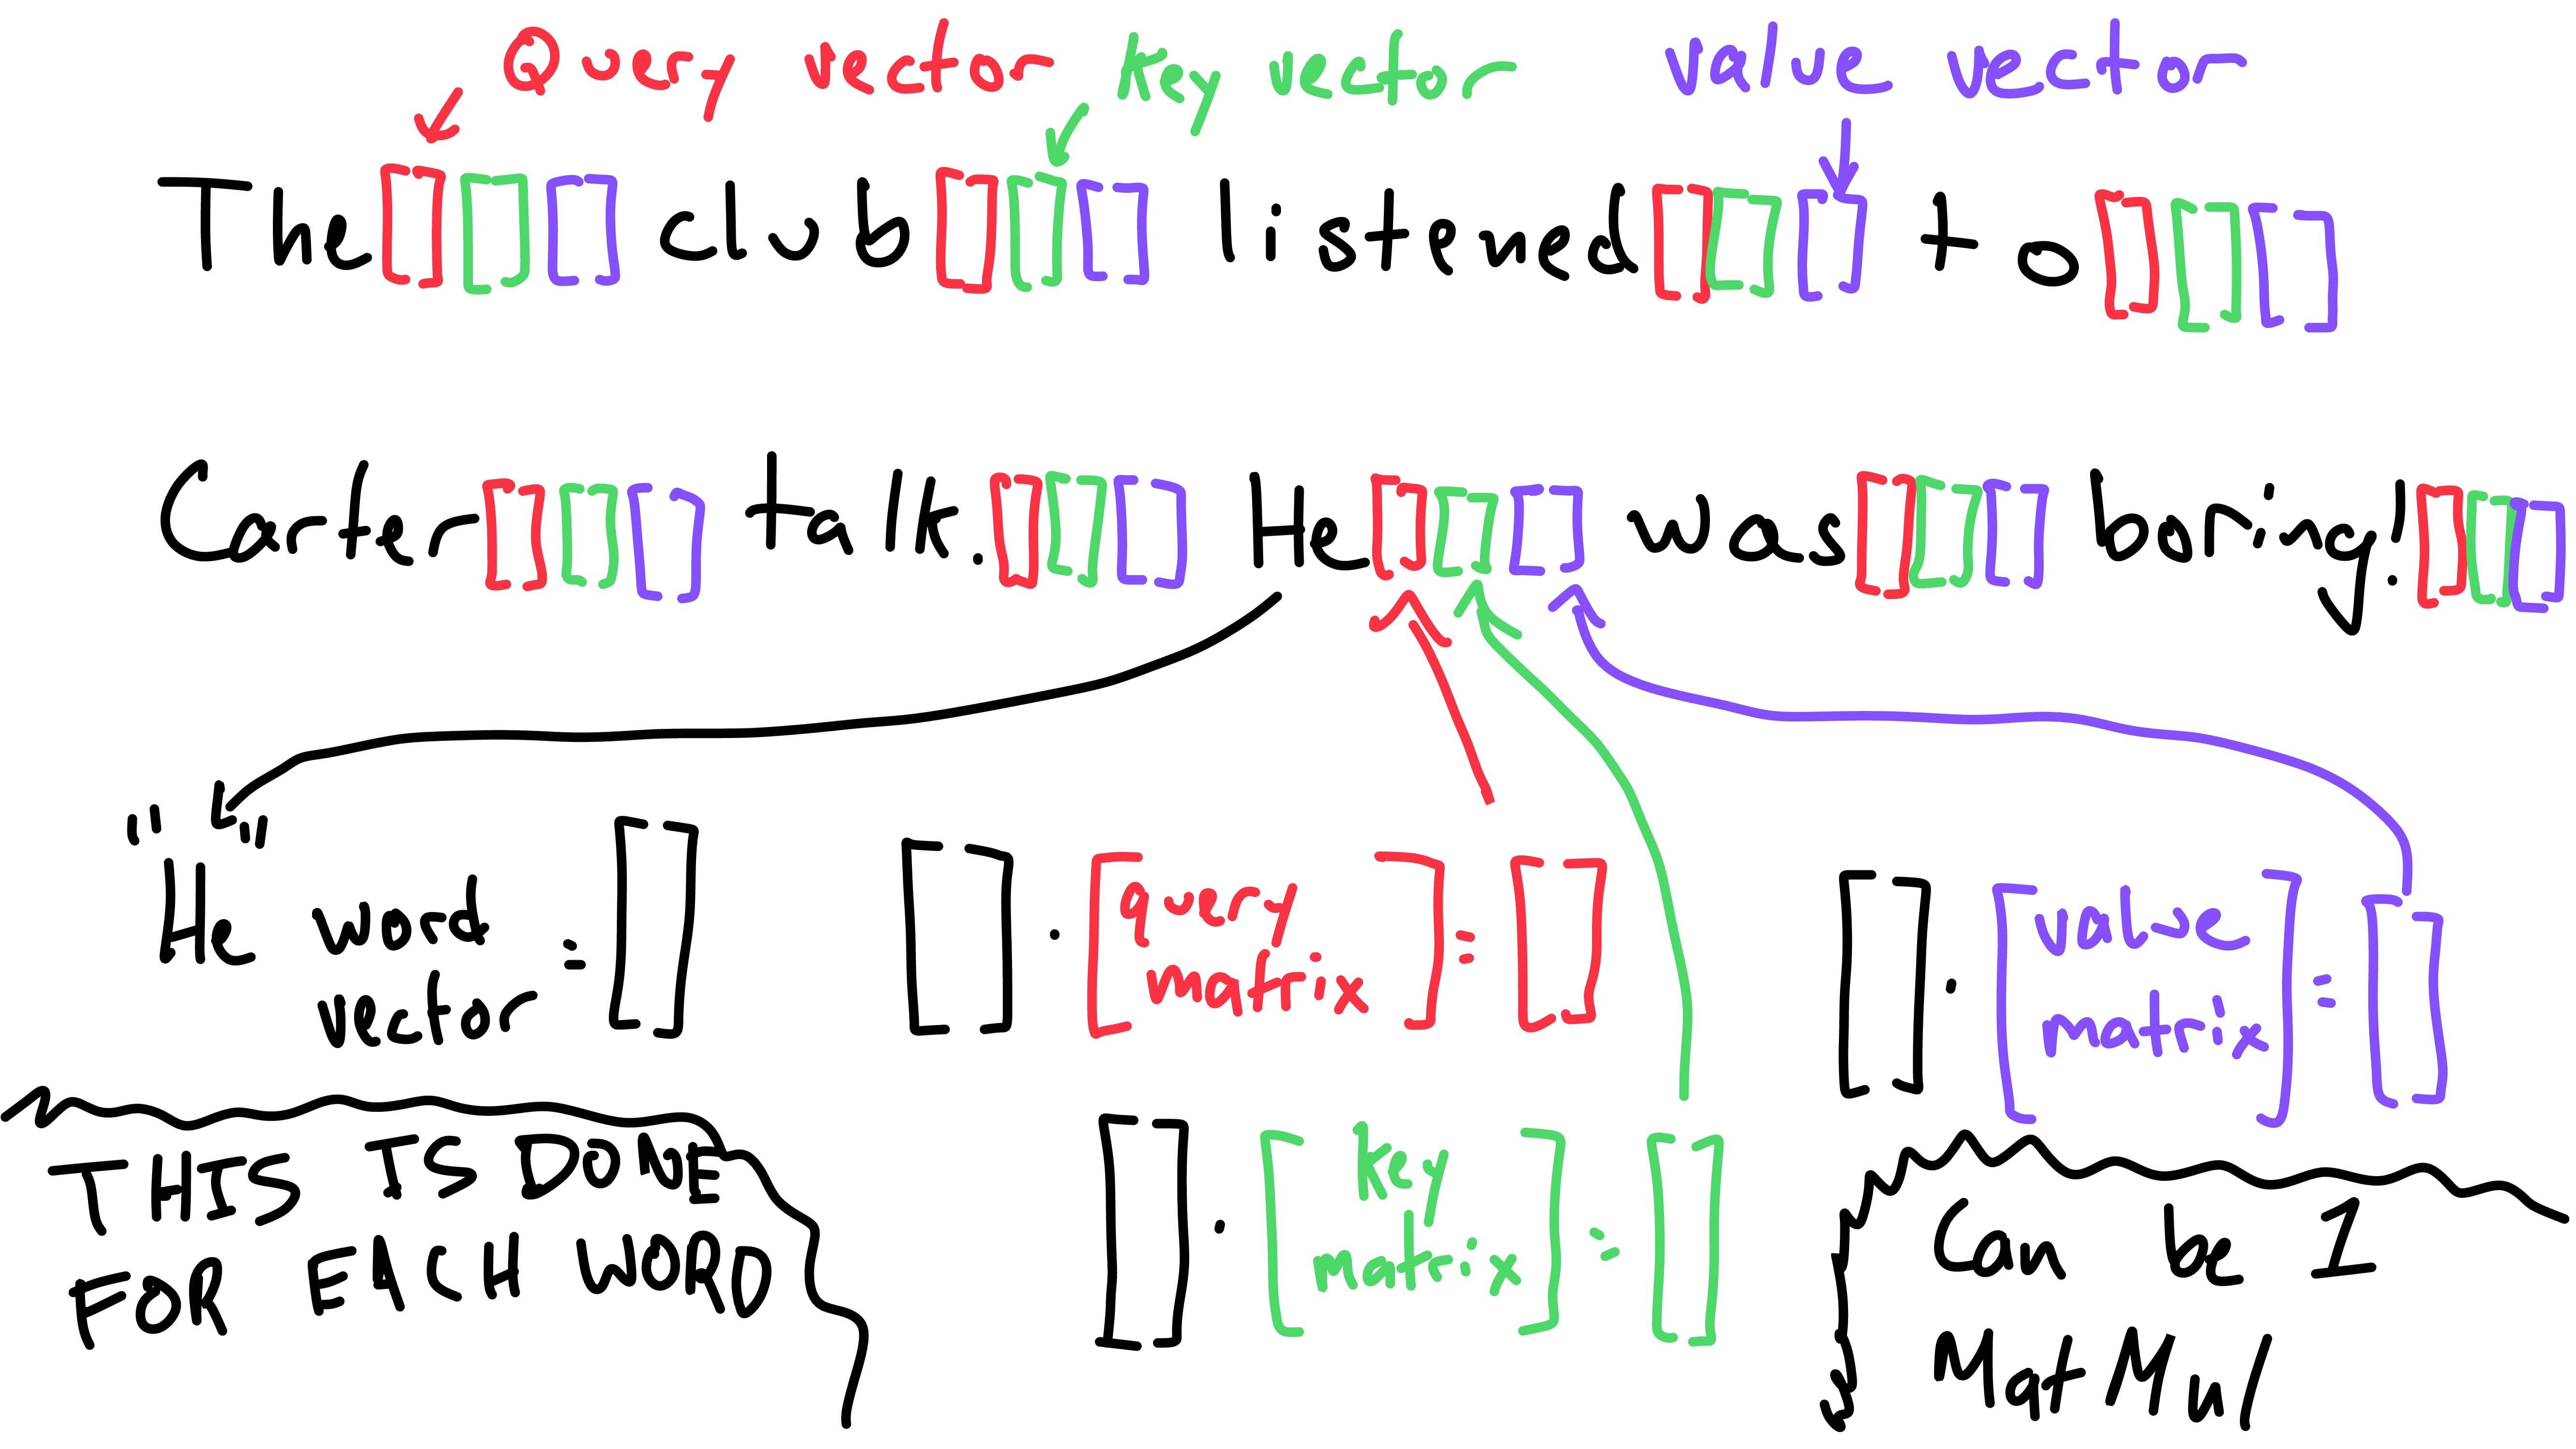 Matrix multiplication for keys